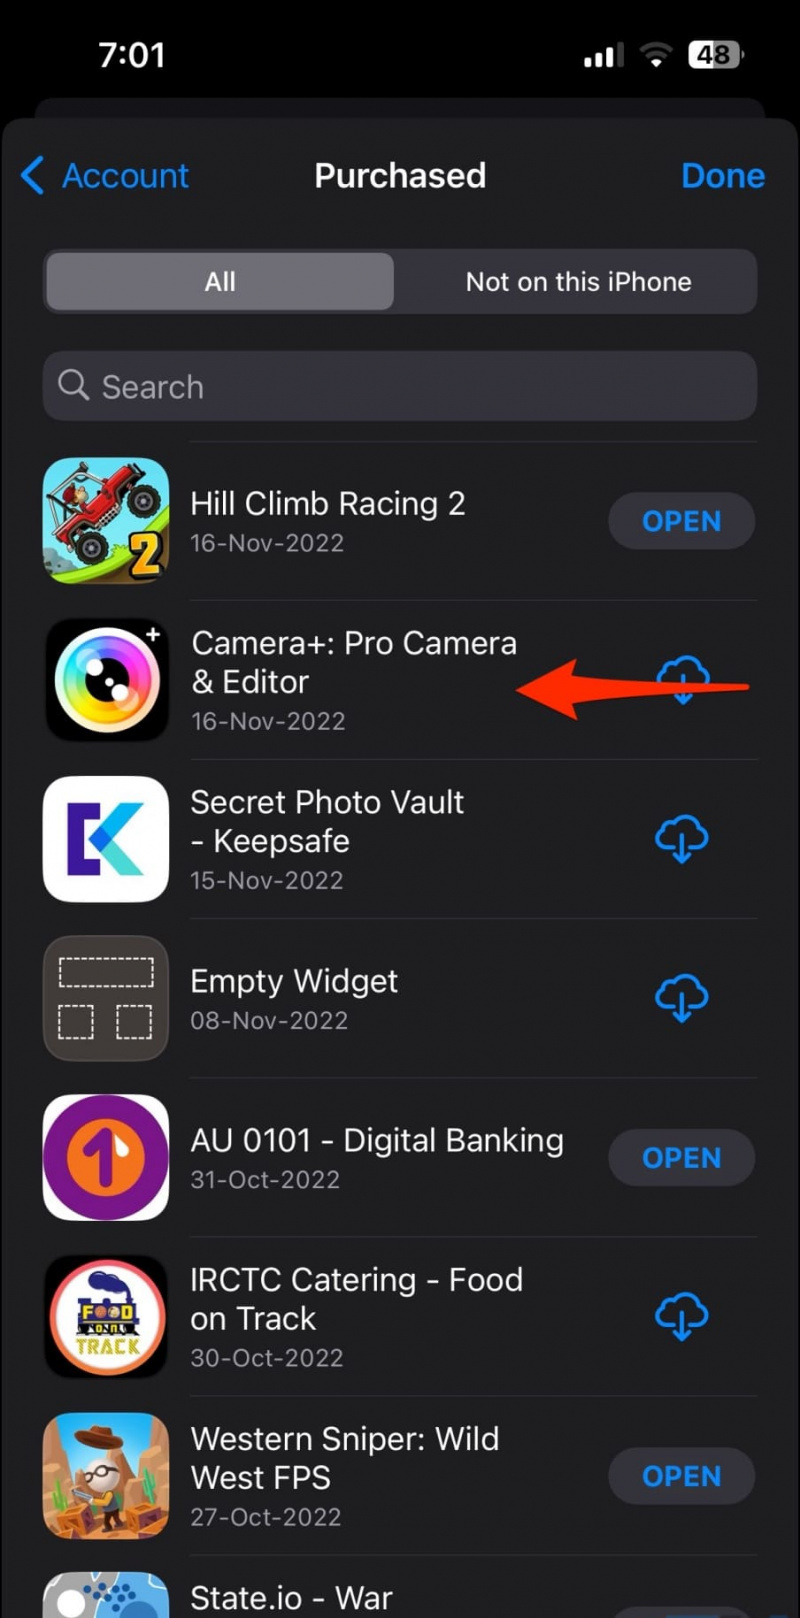   Itago ang Mga Download ng App mula sa History ng App Store